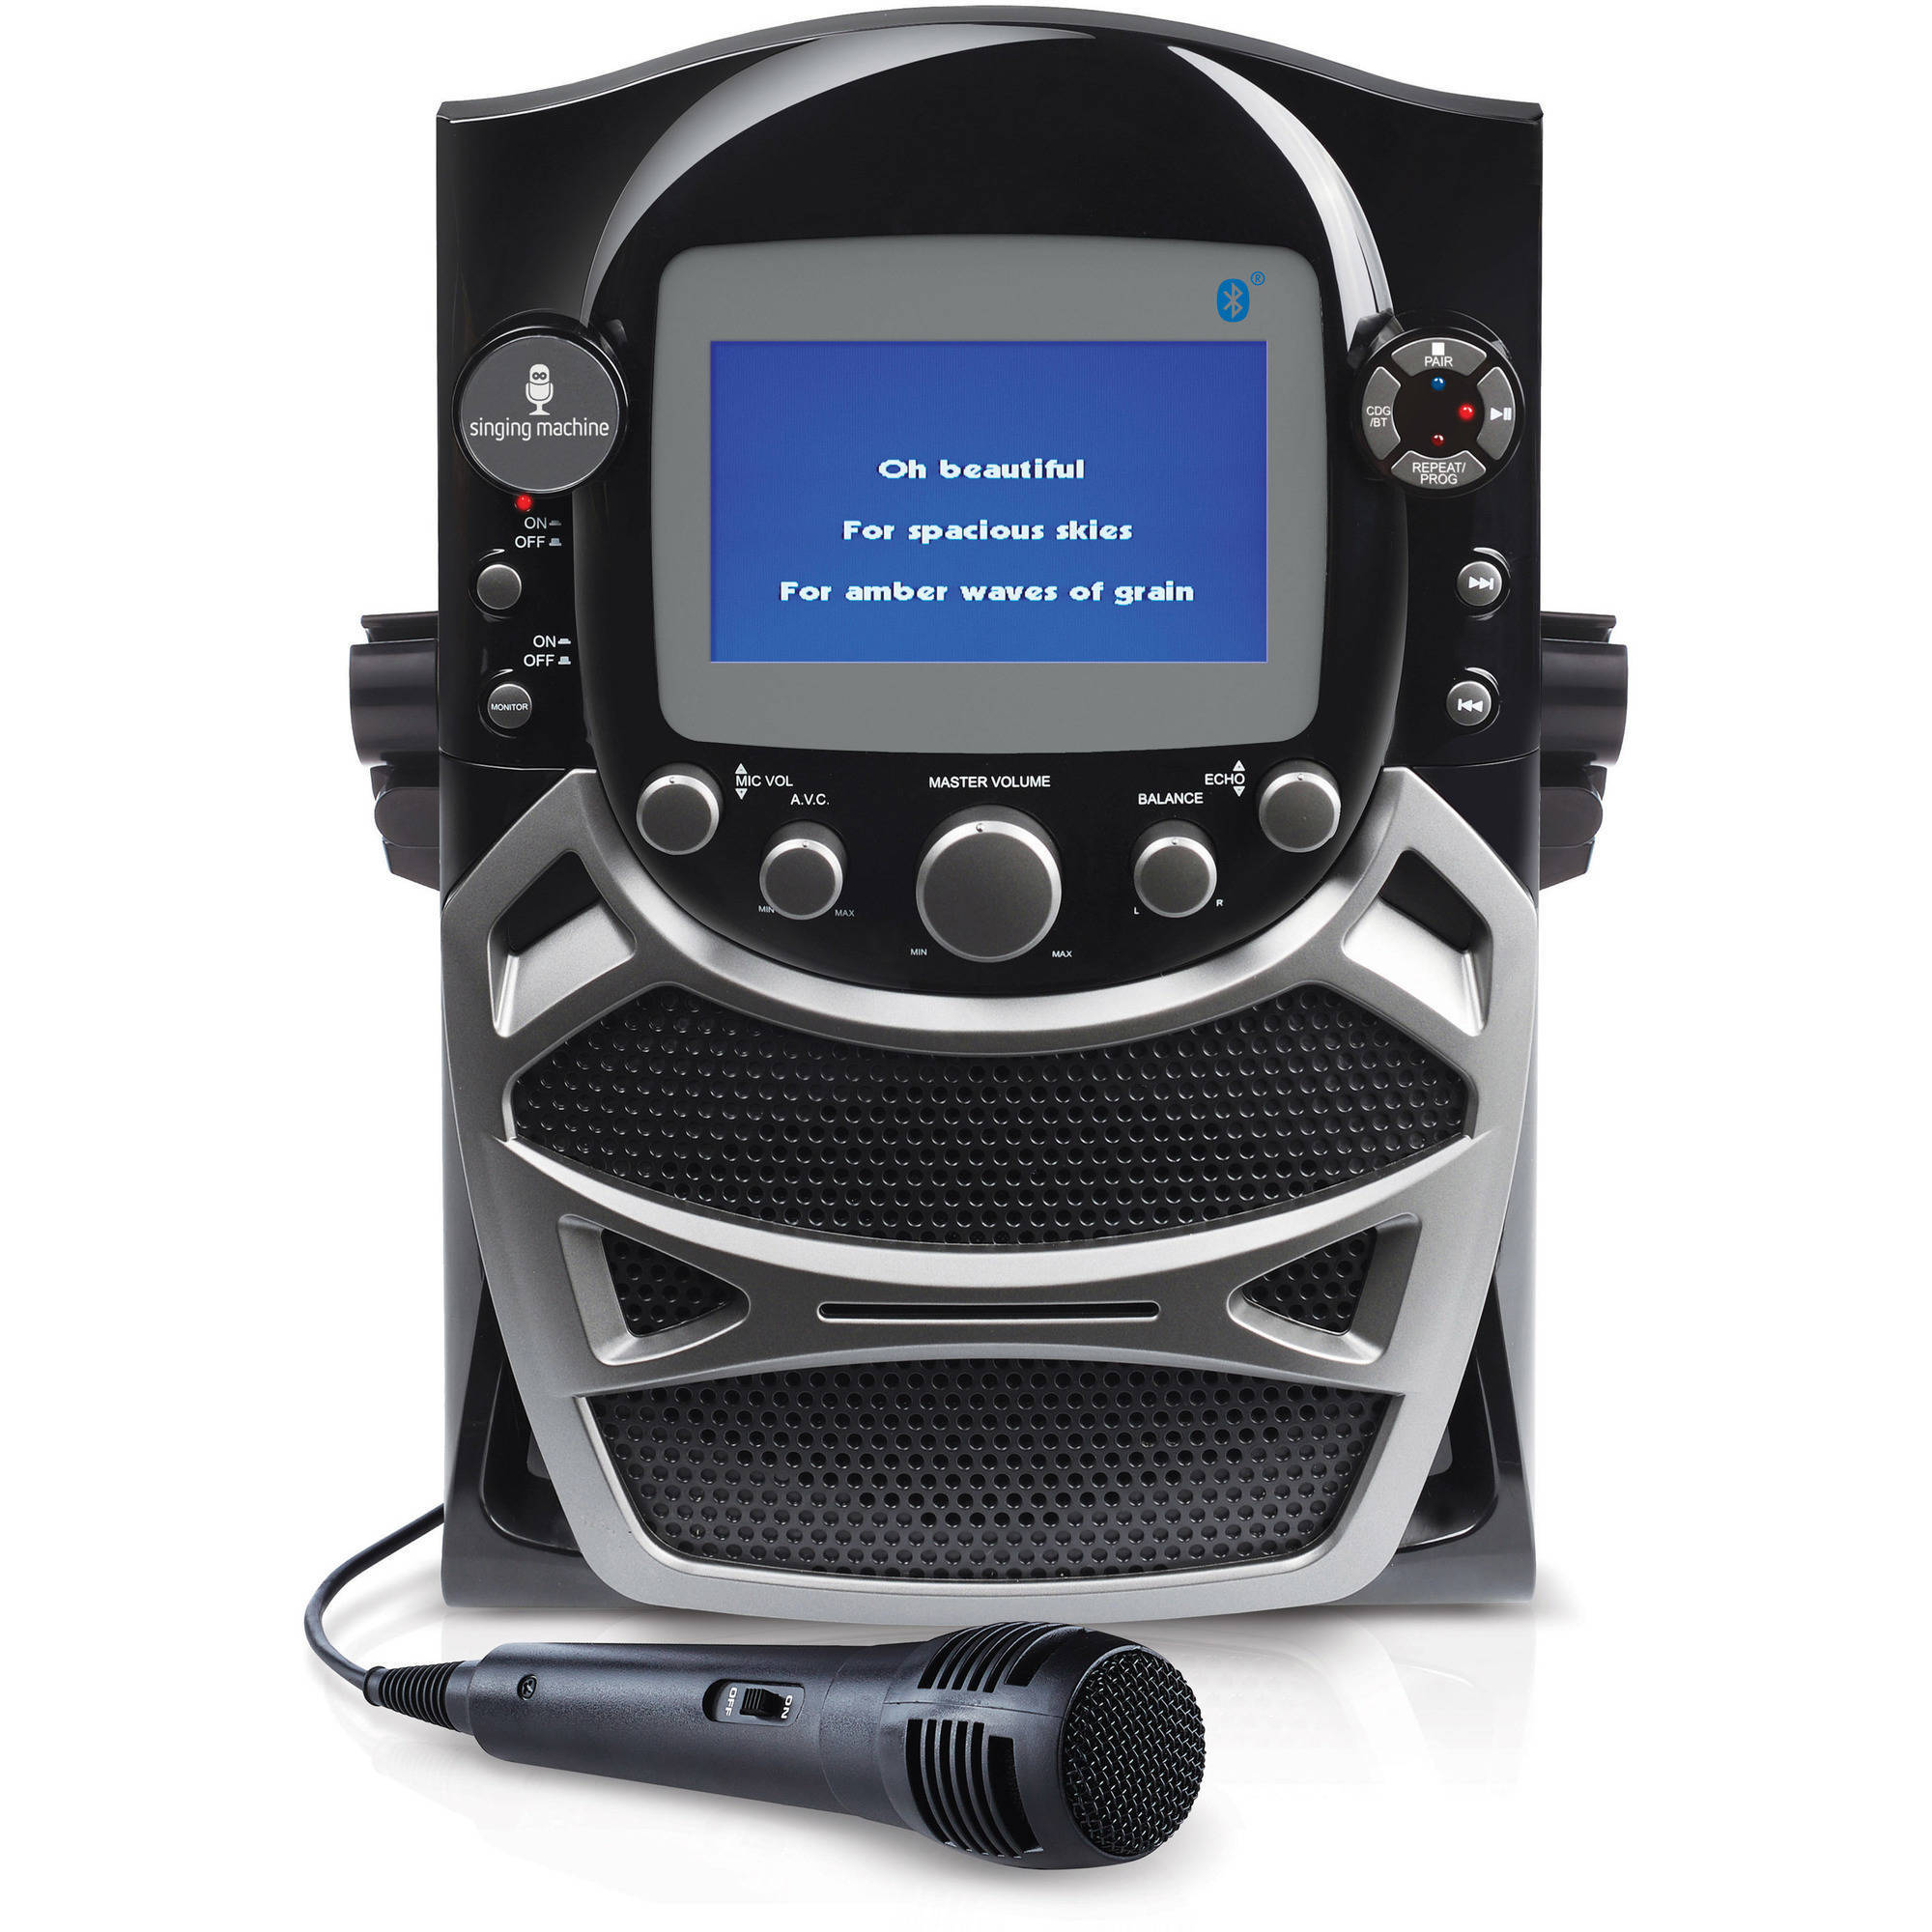 Singing Machine CD+G Karaoke Bluetooth System Built